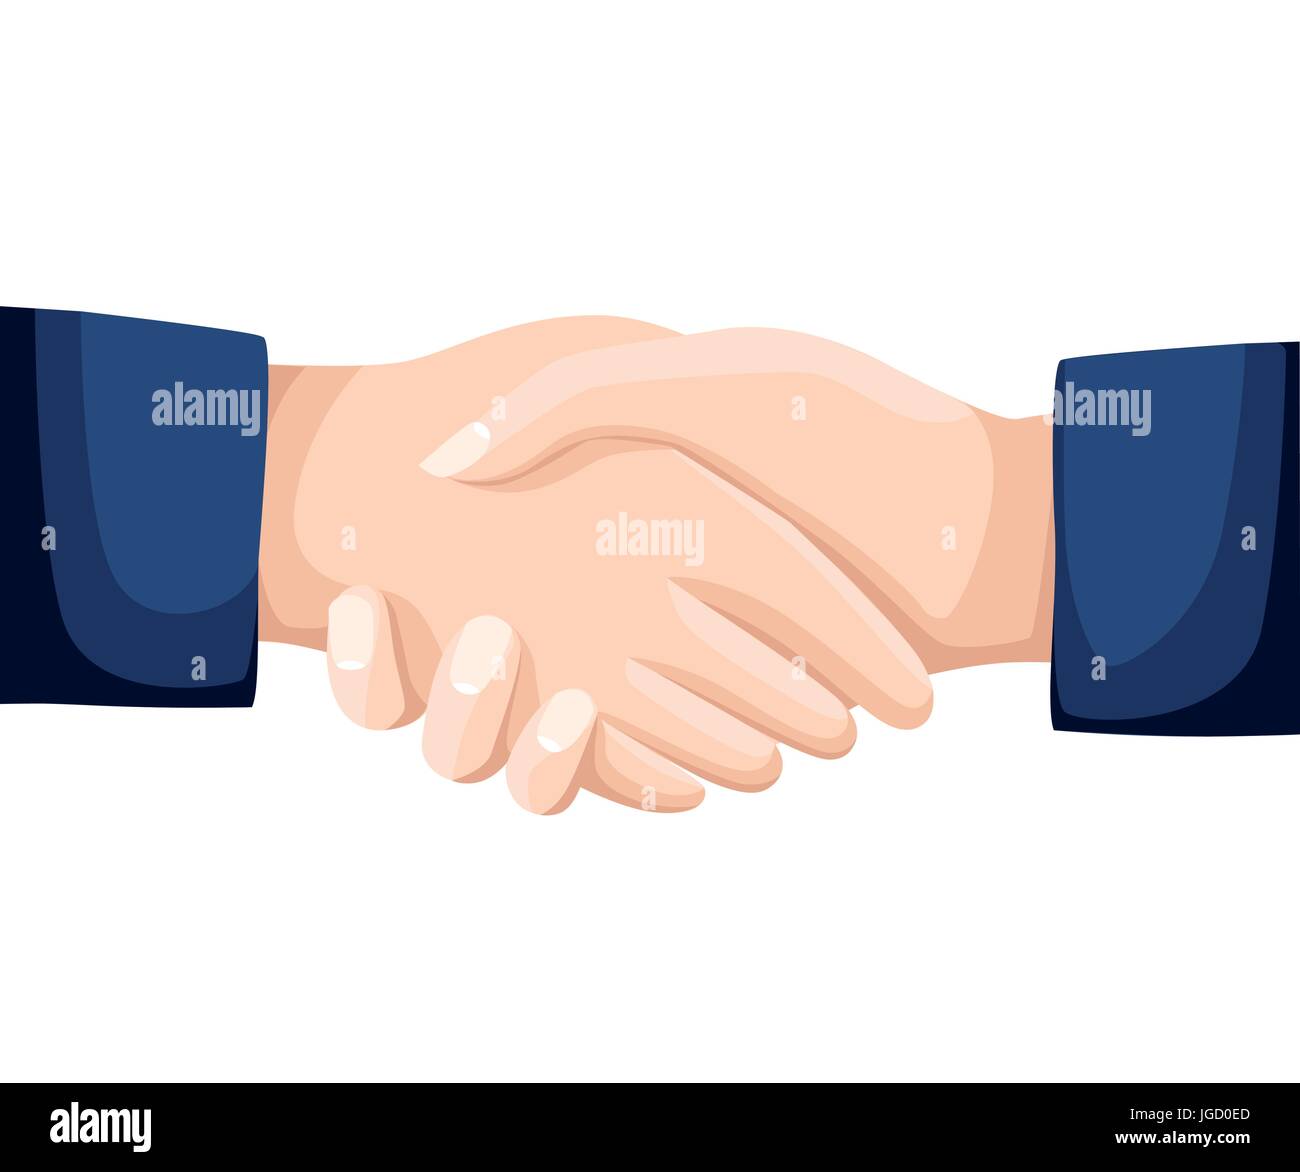 Schütteln Hände Geschäft Vektor-Illustration mit abstrakten Strahlen, Symbol für den Erfolg umzugehen, glückliche Partnerschaft, Gruß schütteln, lässige Handshaking. Web-site Stock Vektor